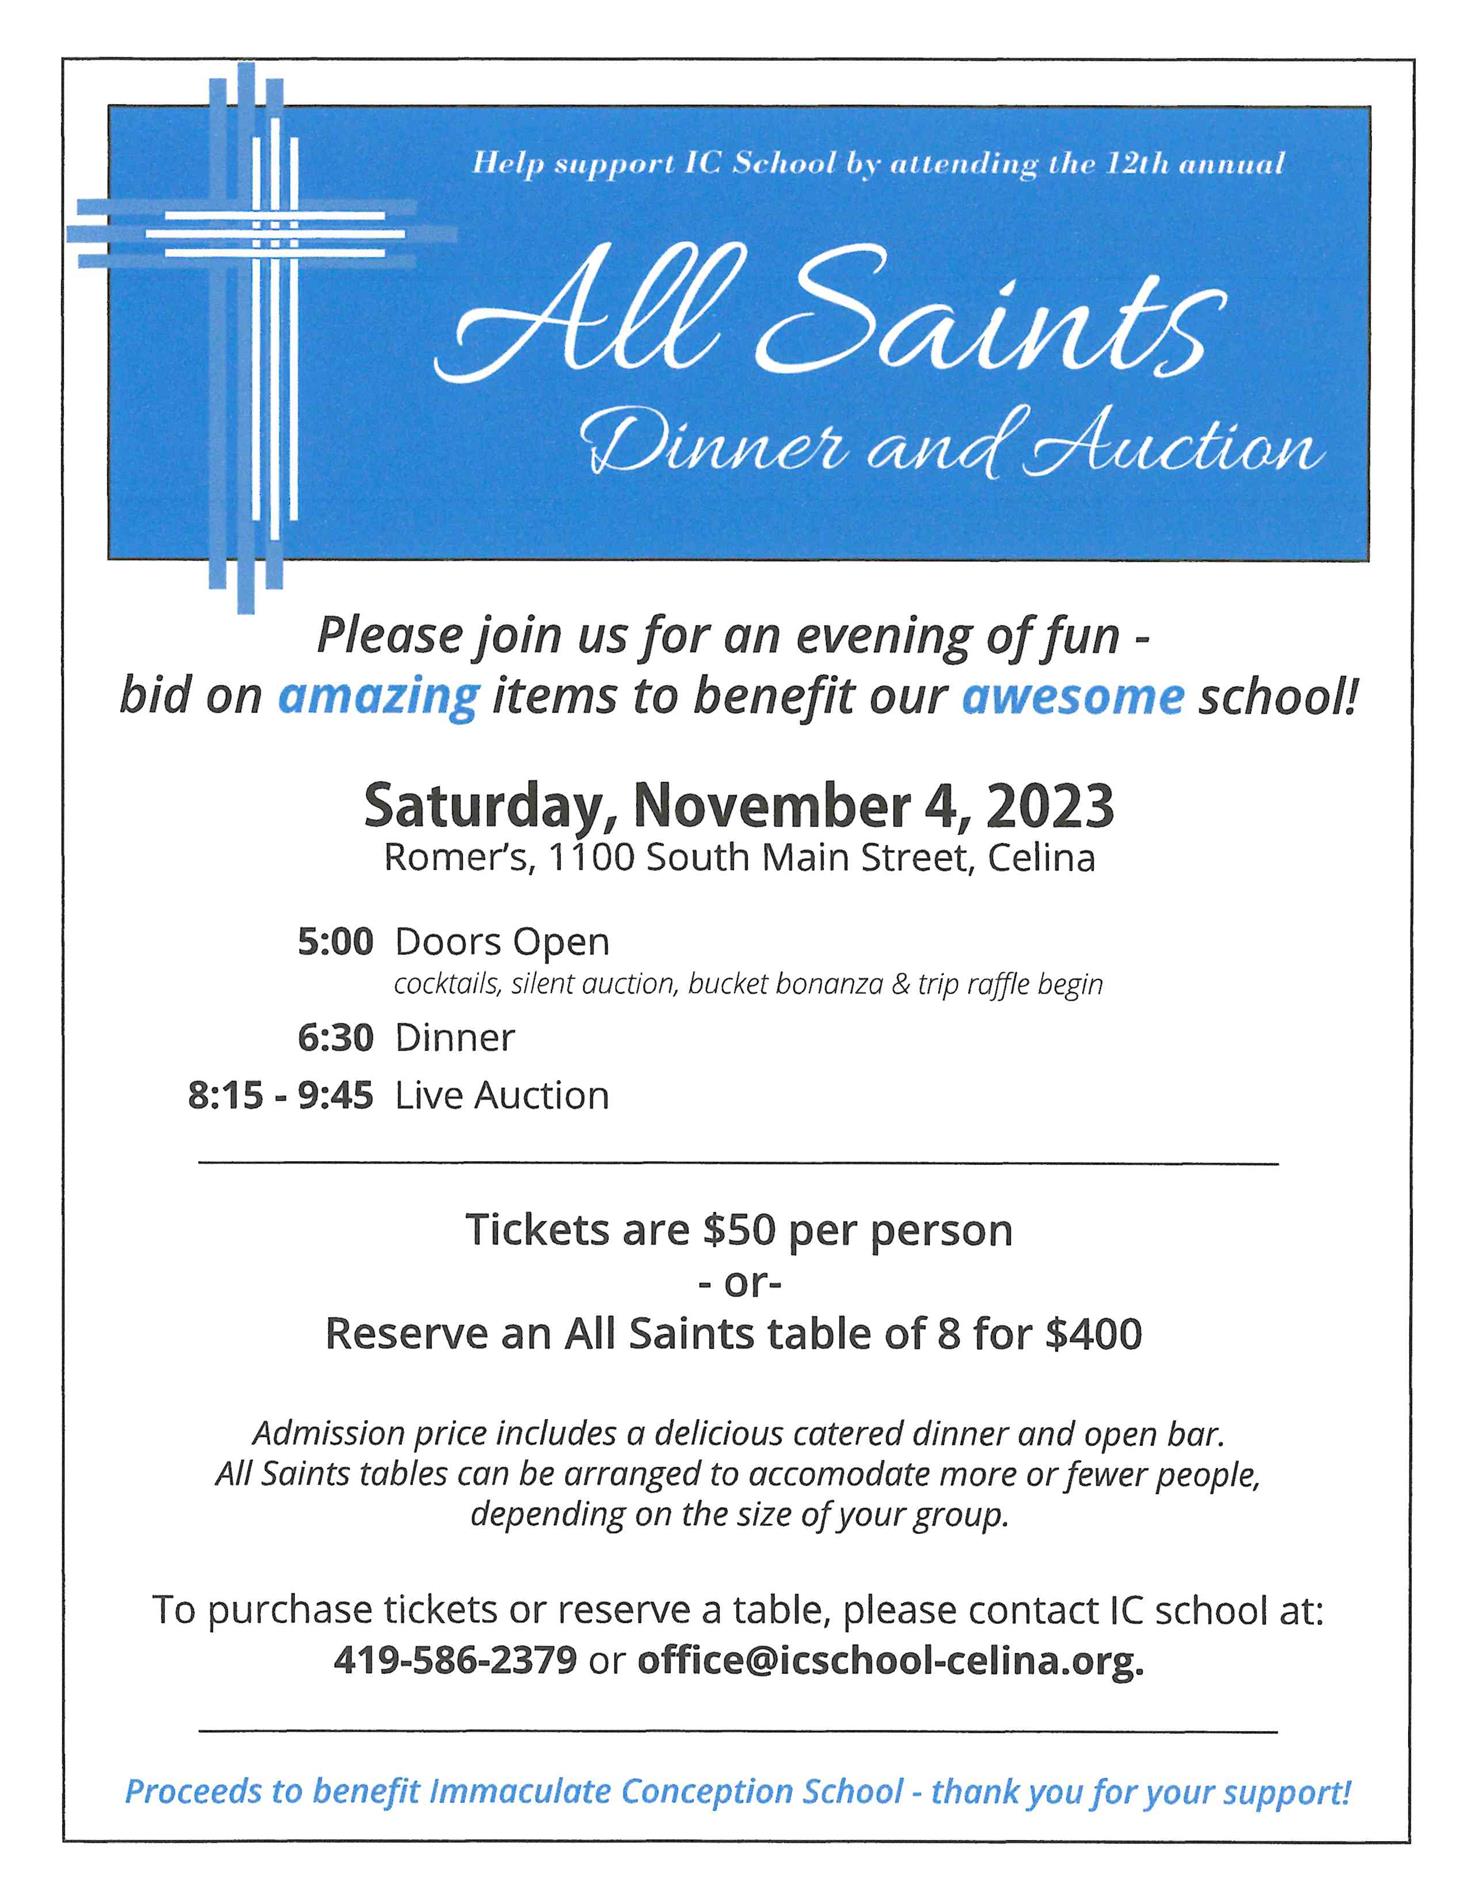 All Saints Auction Flyer 2023